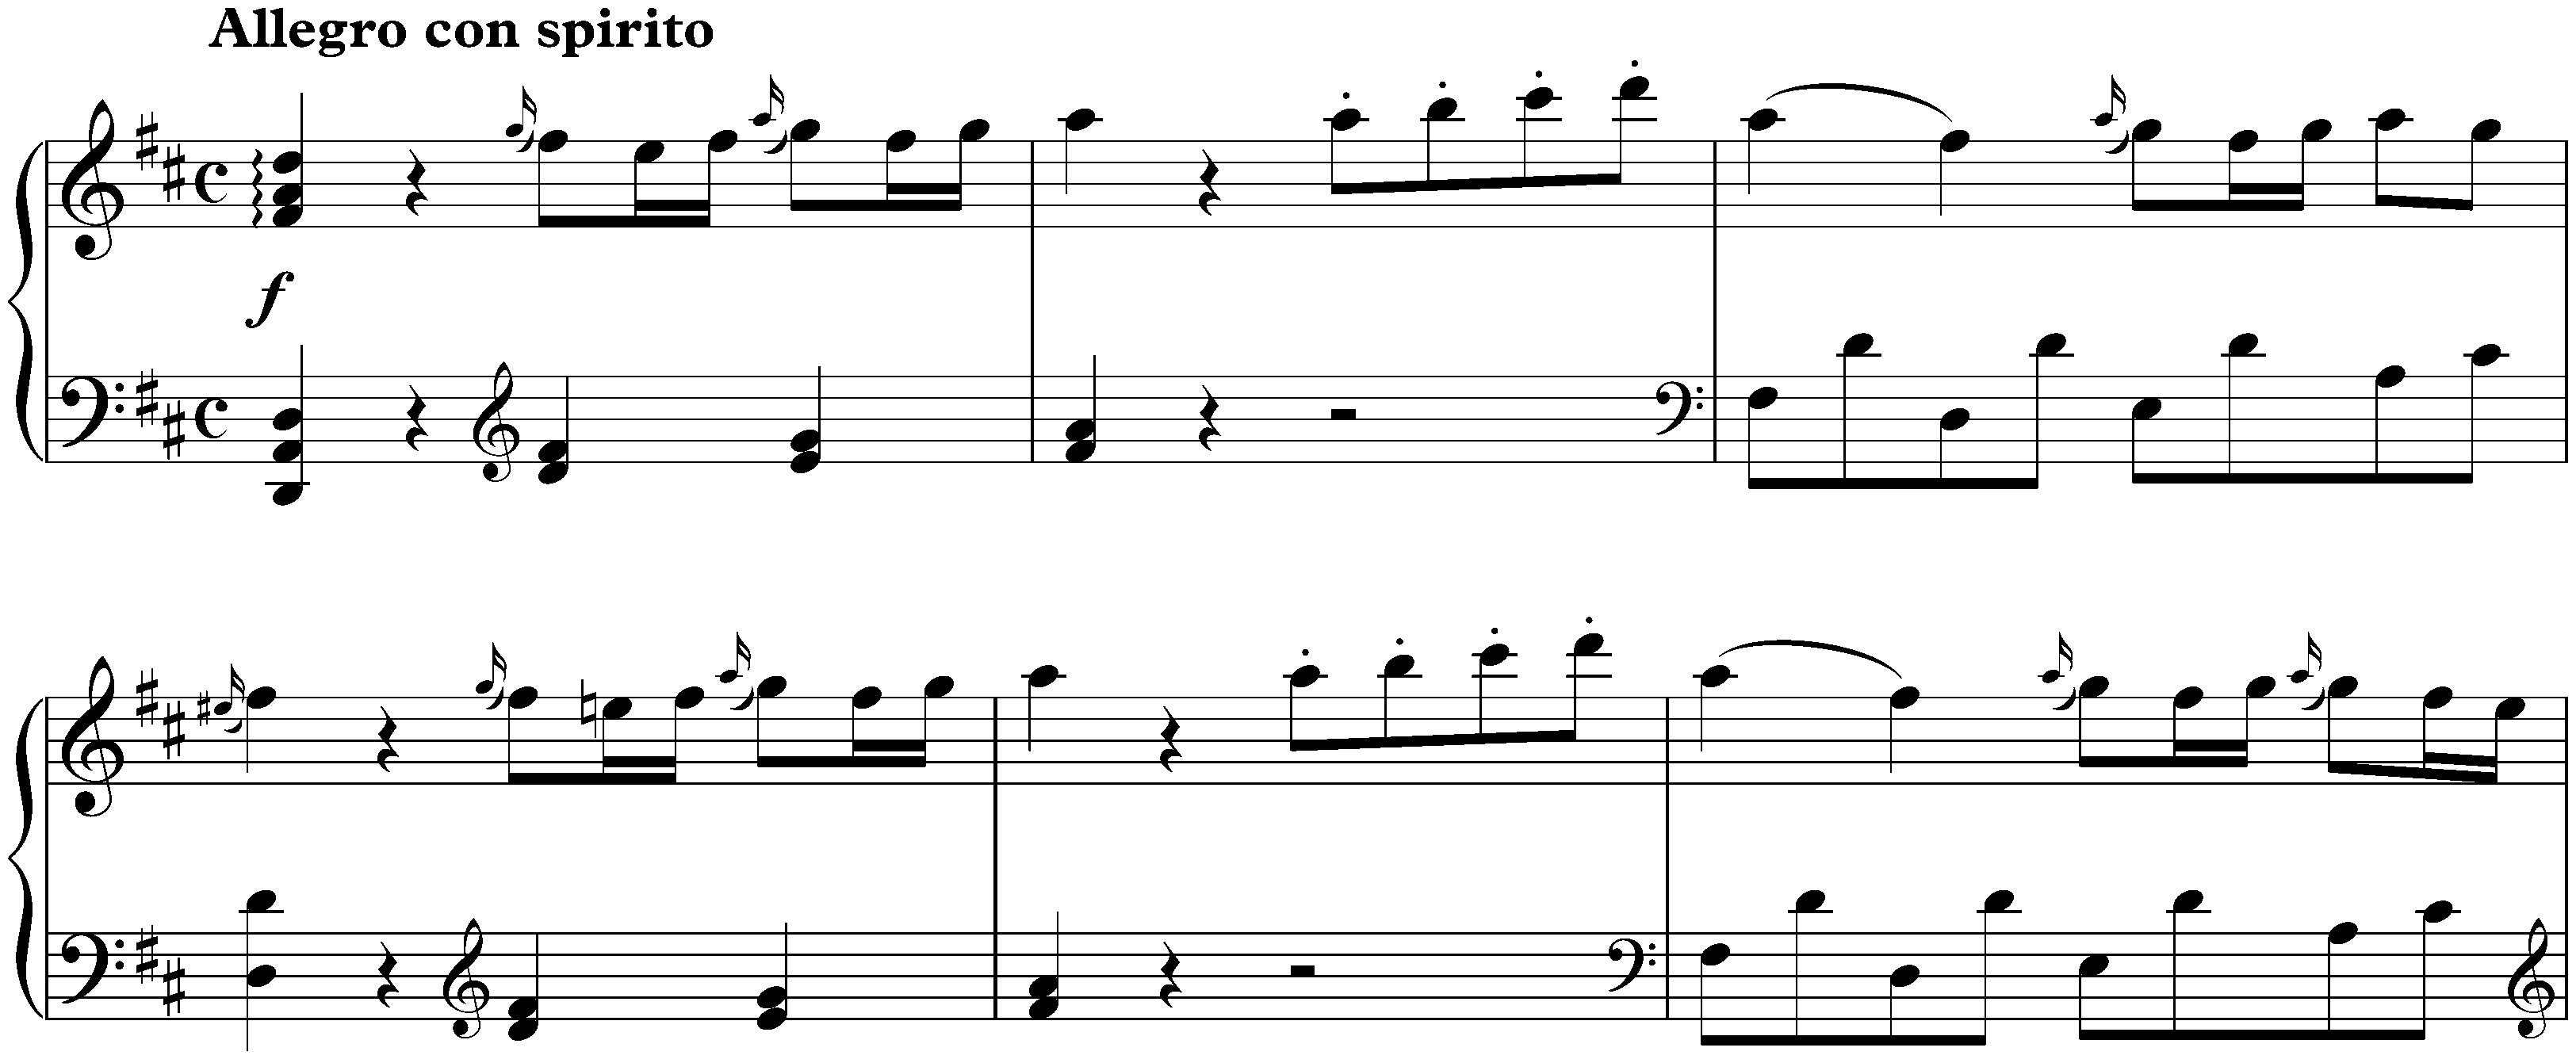 Sonata in D major, KV 311/284c; 1. Allegro con spirito